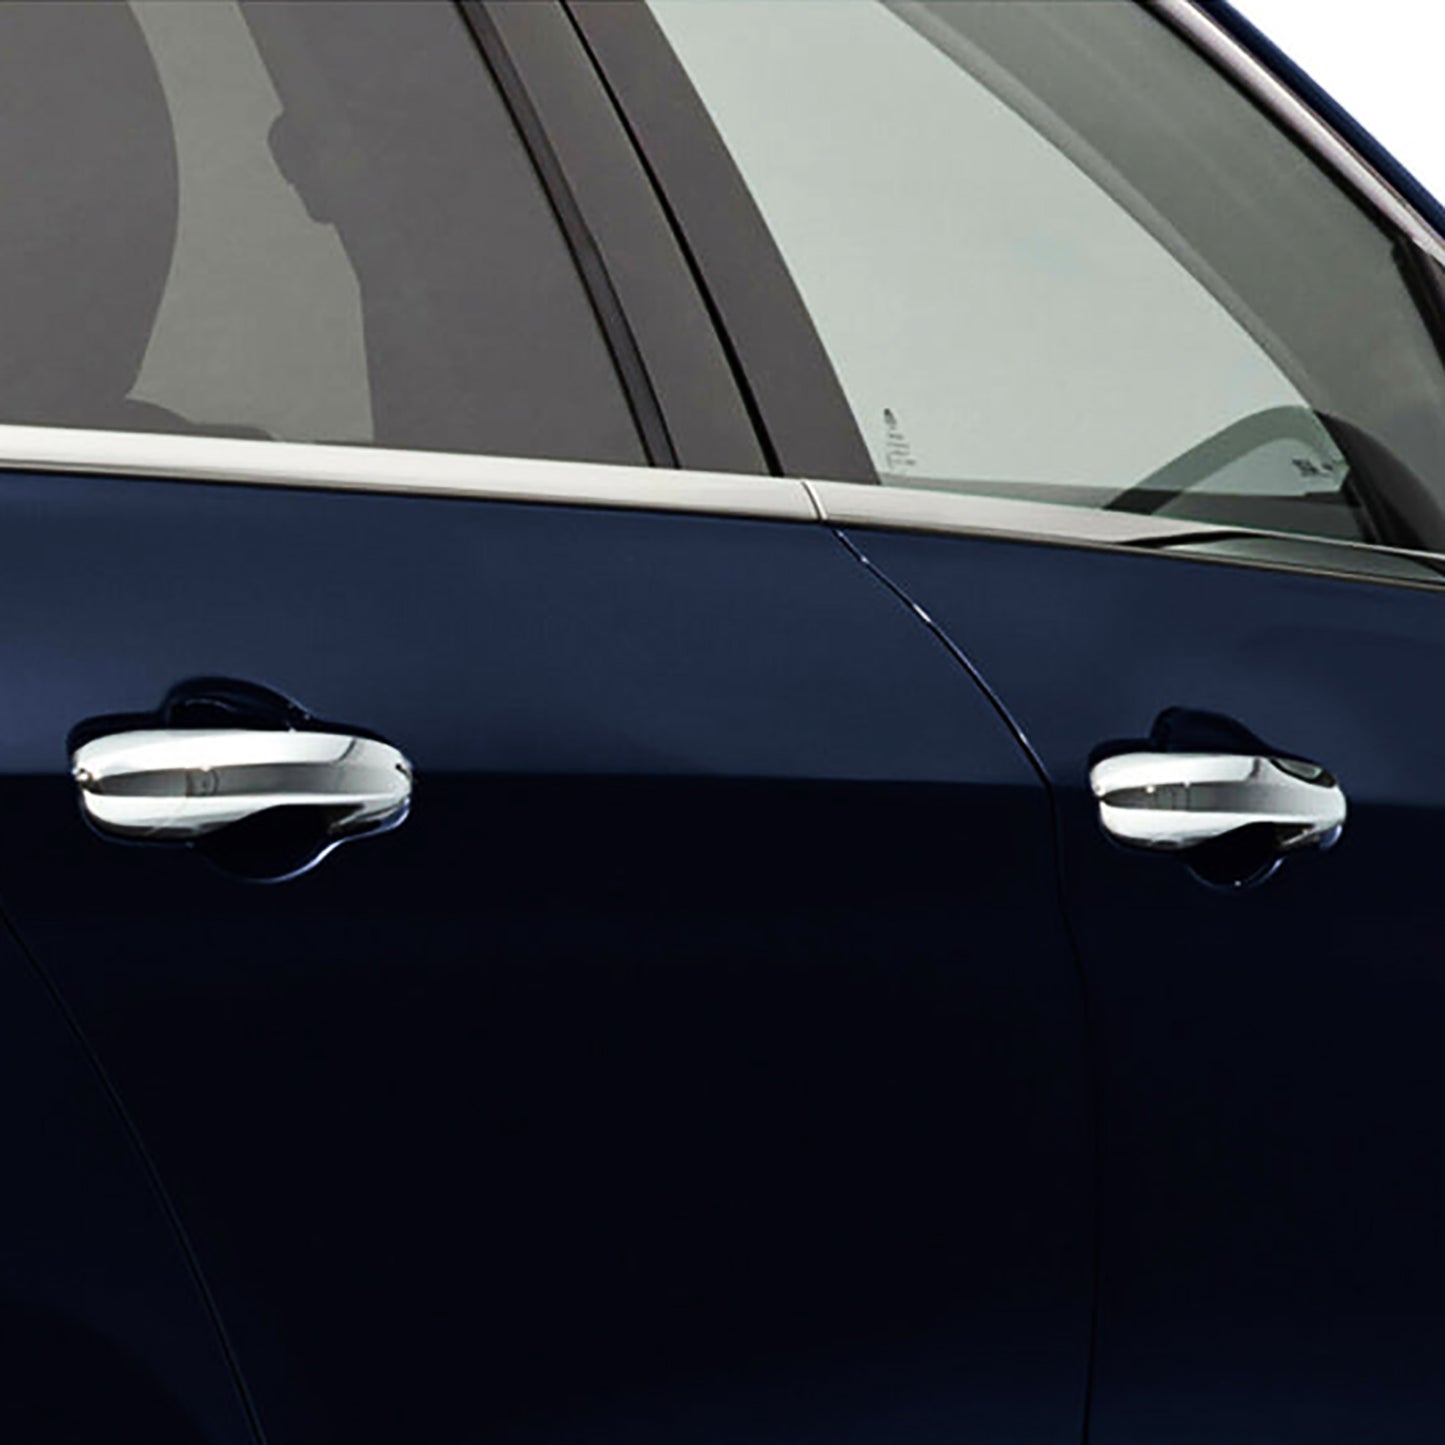 Lexus Gx 460 Kapı Kolu Aksesuarları Detaylı Resimleri, Kampanya bilgileri ve fiyatı - 2